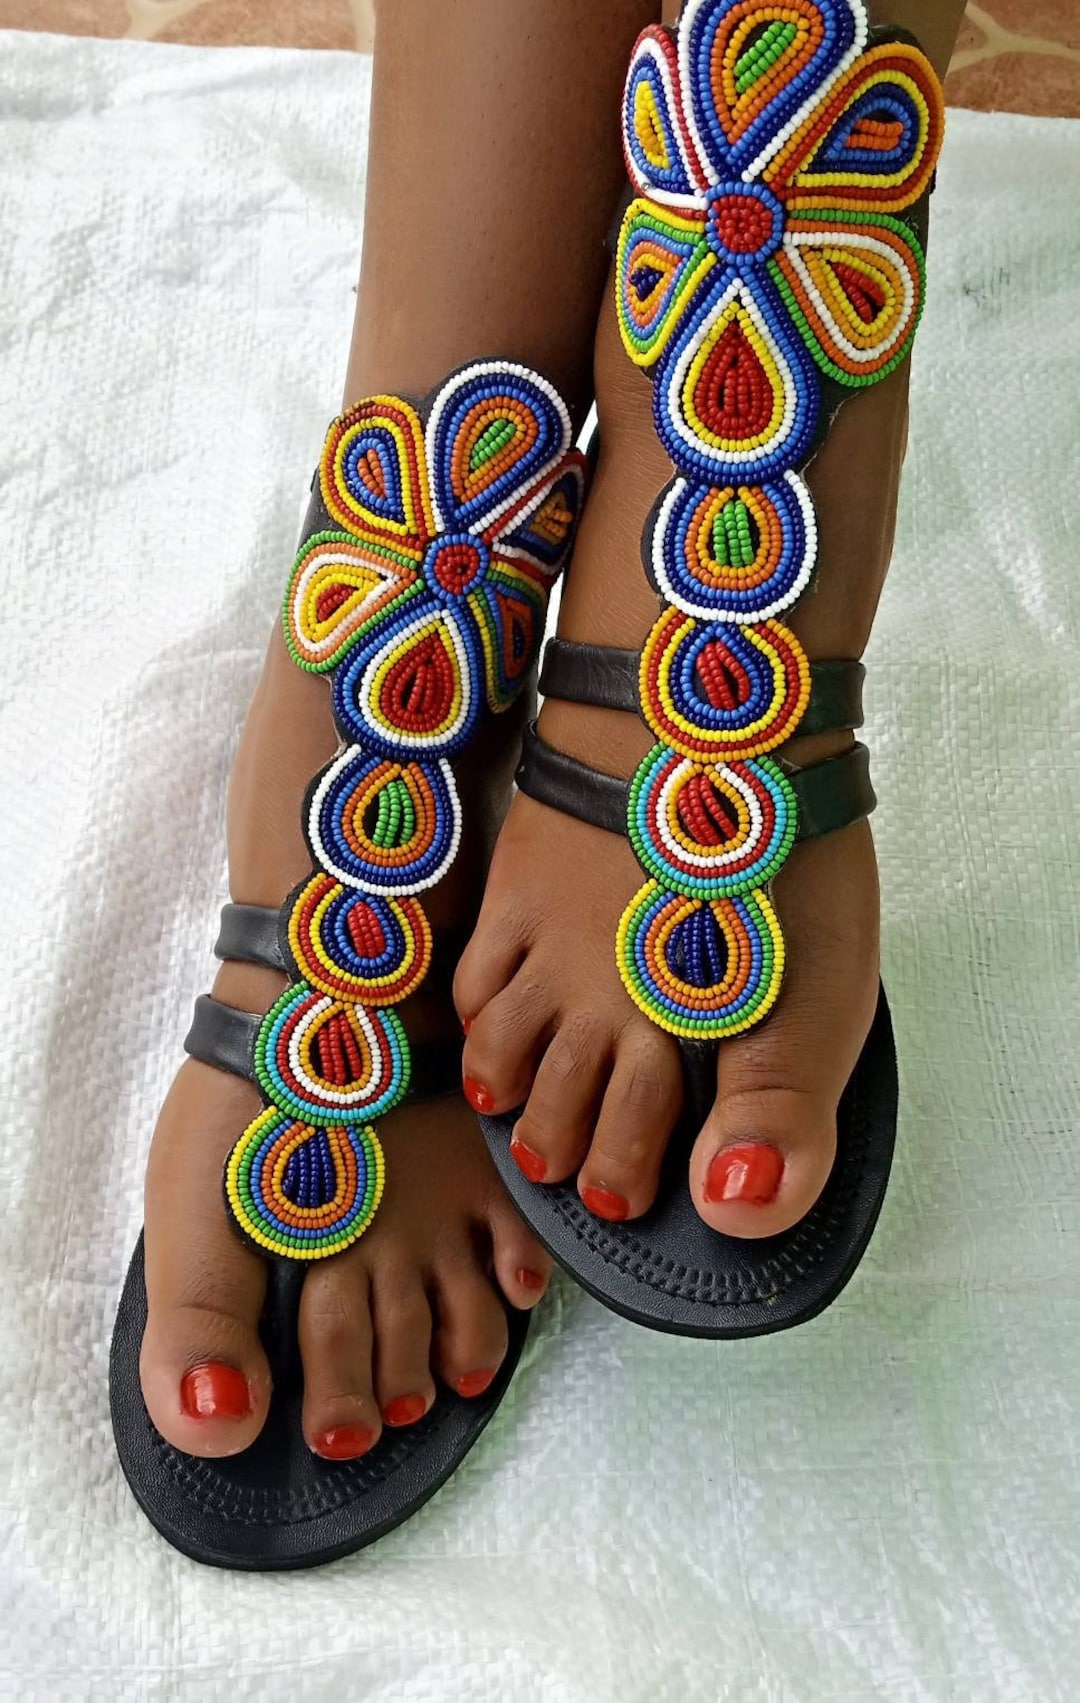 ON SALE African Gladiator Sandal/sandals/sandals for - Etsy